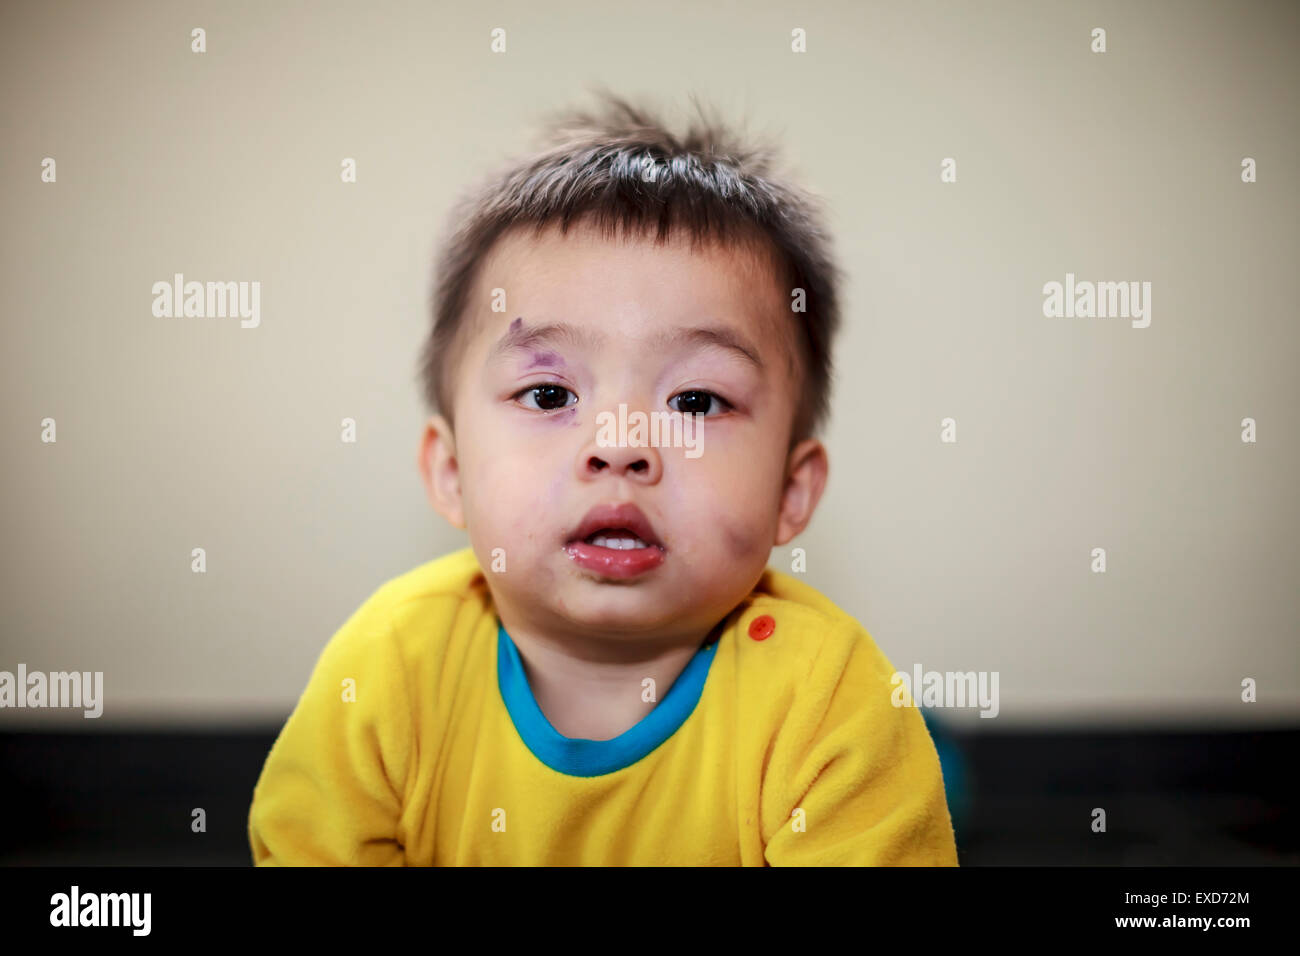 Ein Kind mit einem blauen Auge und blaue Flecken im Gesicht Stockfoto